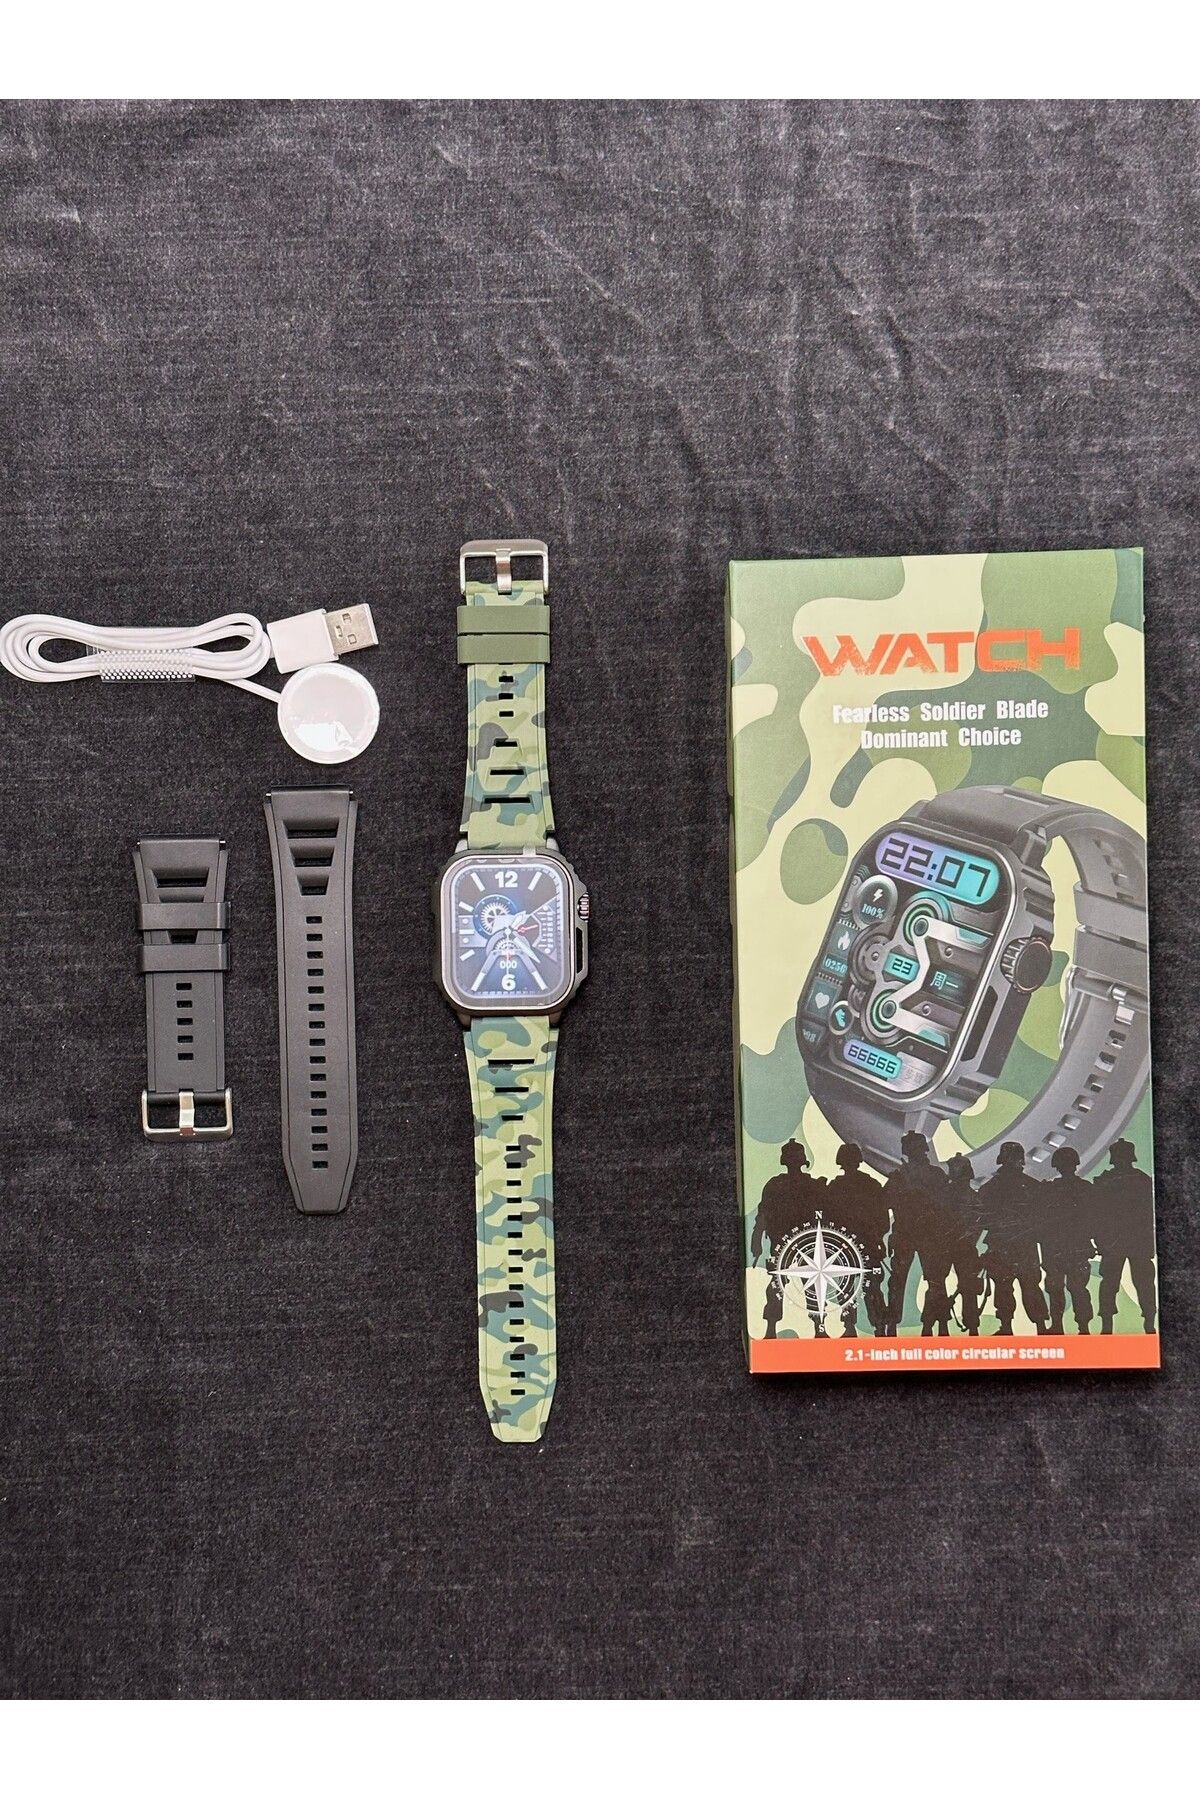 Wearfitpro Watch Amoled Ekran Akıllı Saat Askeri Kamufulaj Desenli 41mm Tasarım Ödüllü Saat Tw11 Model